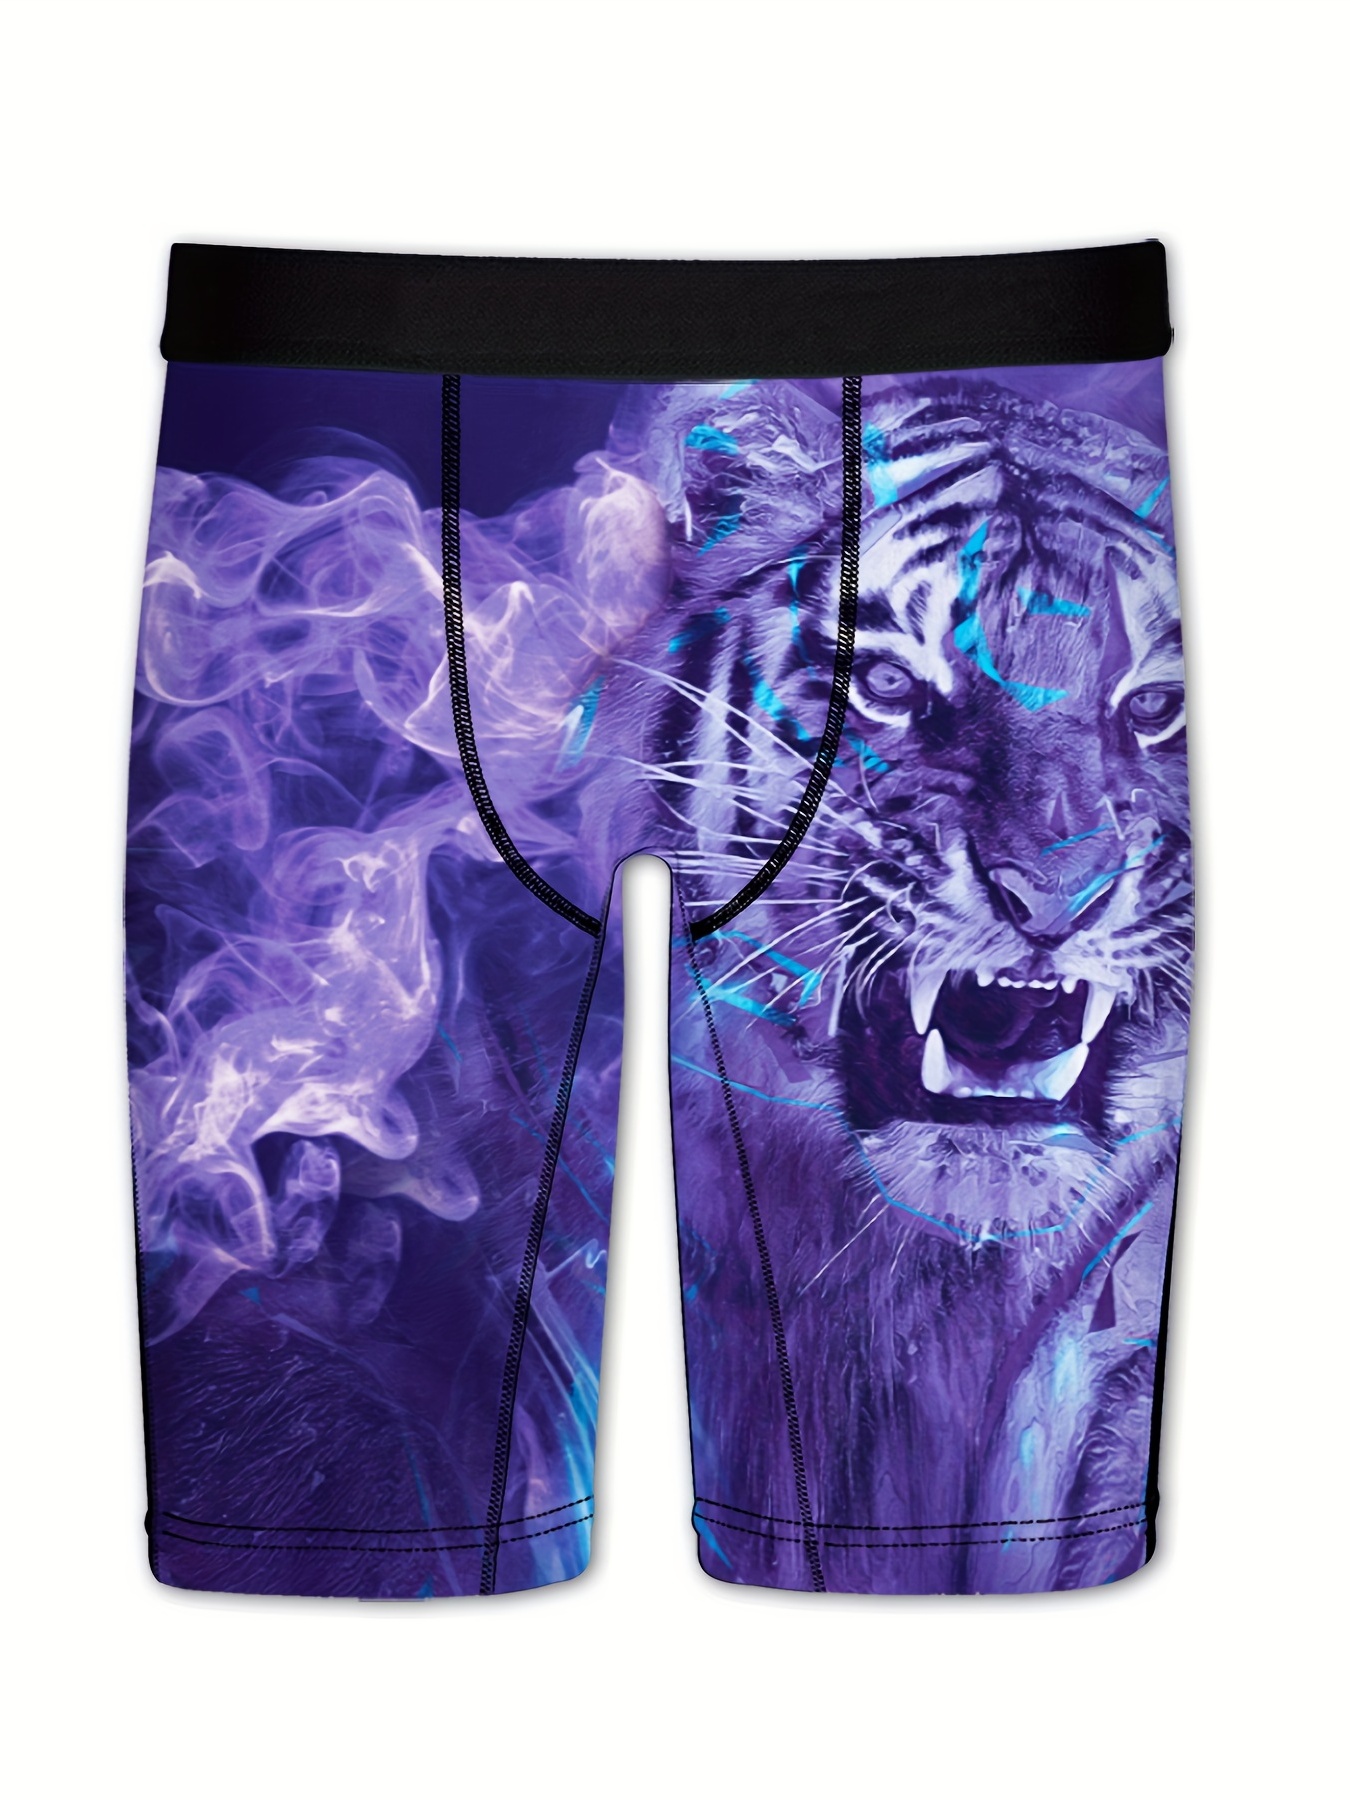 yazs Mens Boxer Briefs Underwear Shorts Underpants - Xxl - Snake Print  Golden Purple Gold : : Home & Kitchen